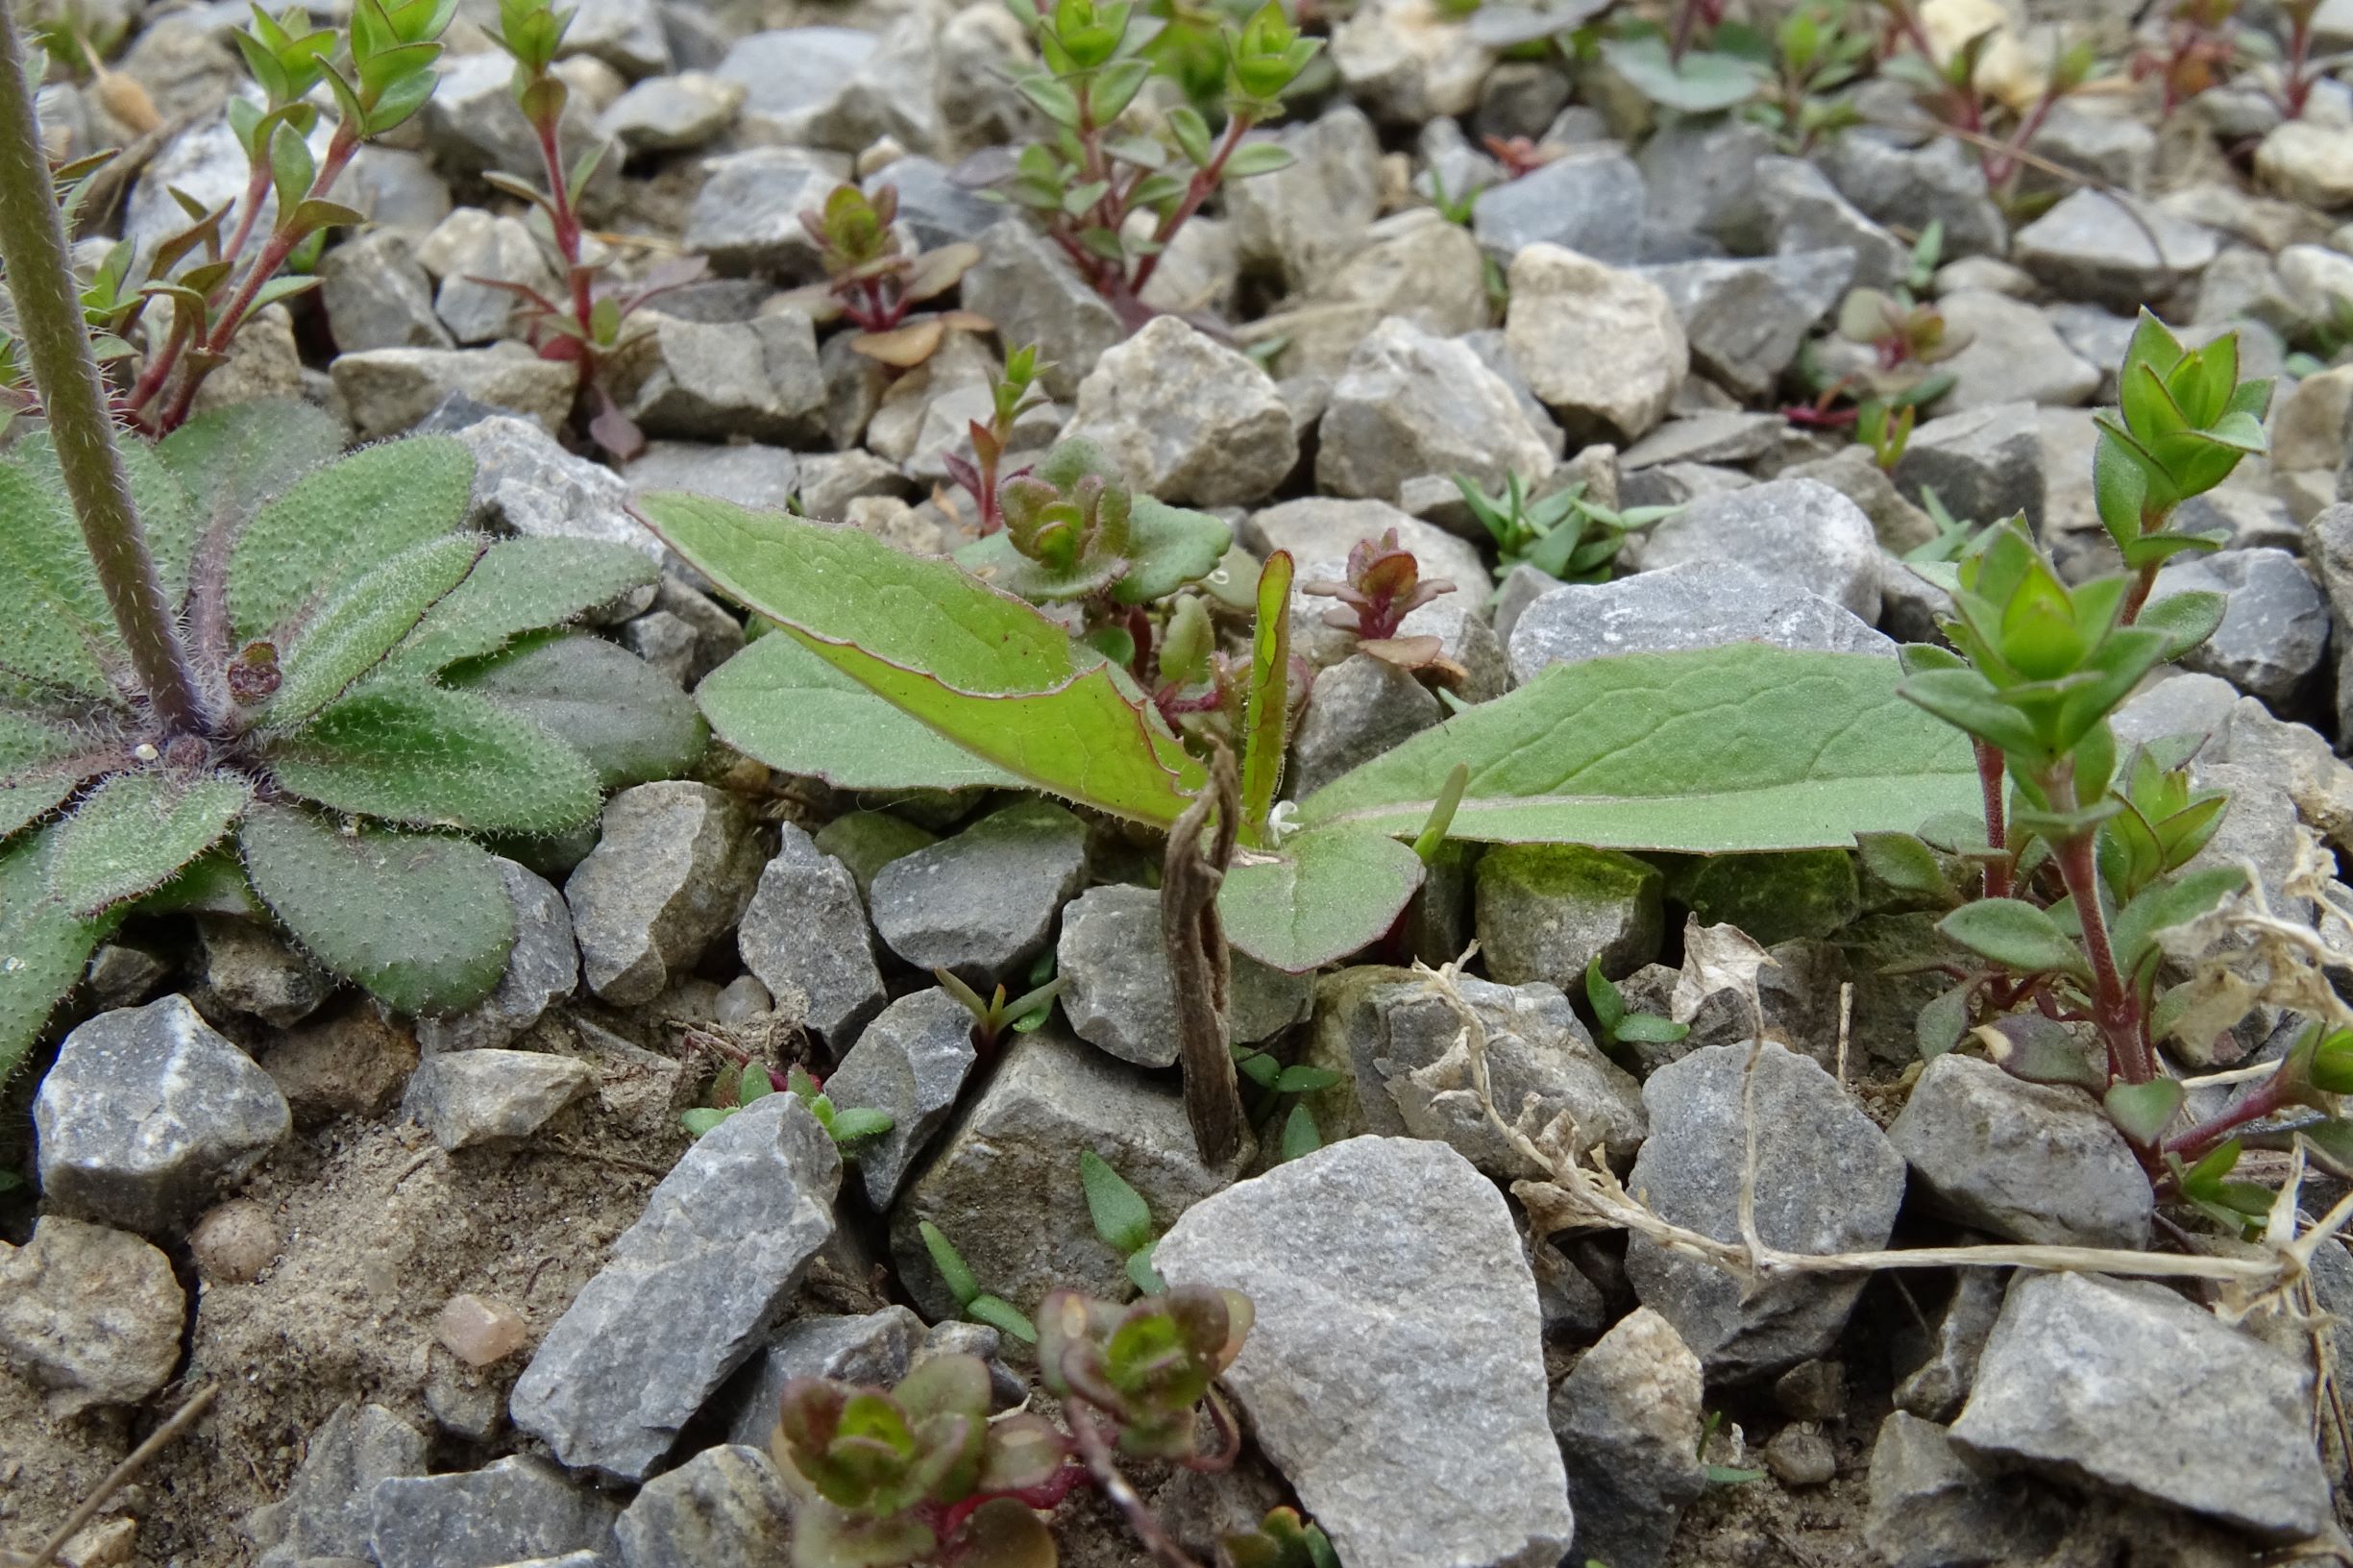 DSC02852 friedhof hainburg, 2021-04-06, lactuca serriola (mitte), arabidopsis thaliana, arenaria serpyllifolia s.str. etc.JPG